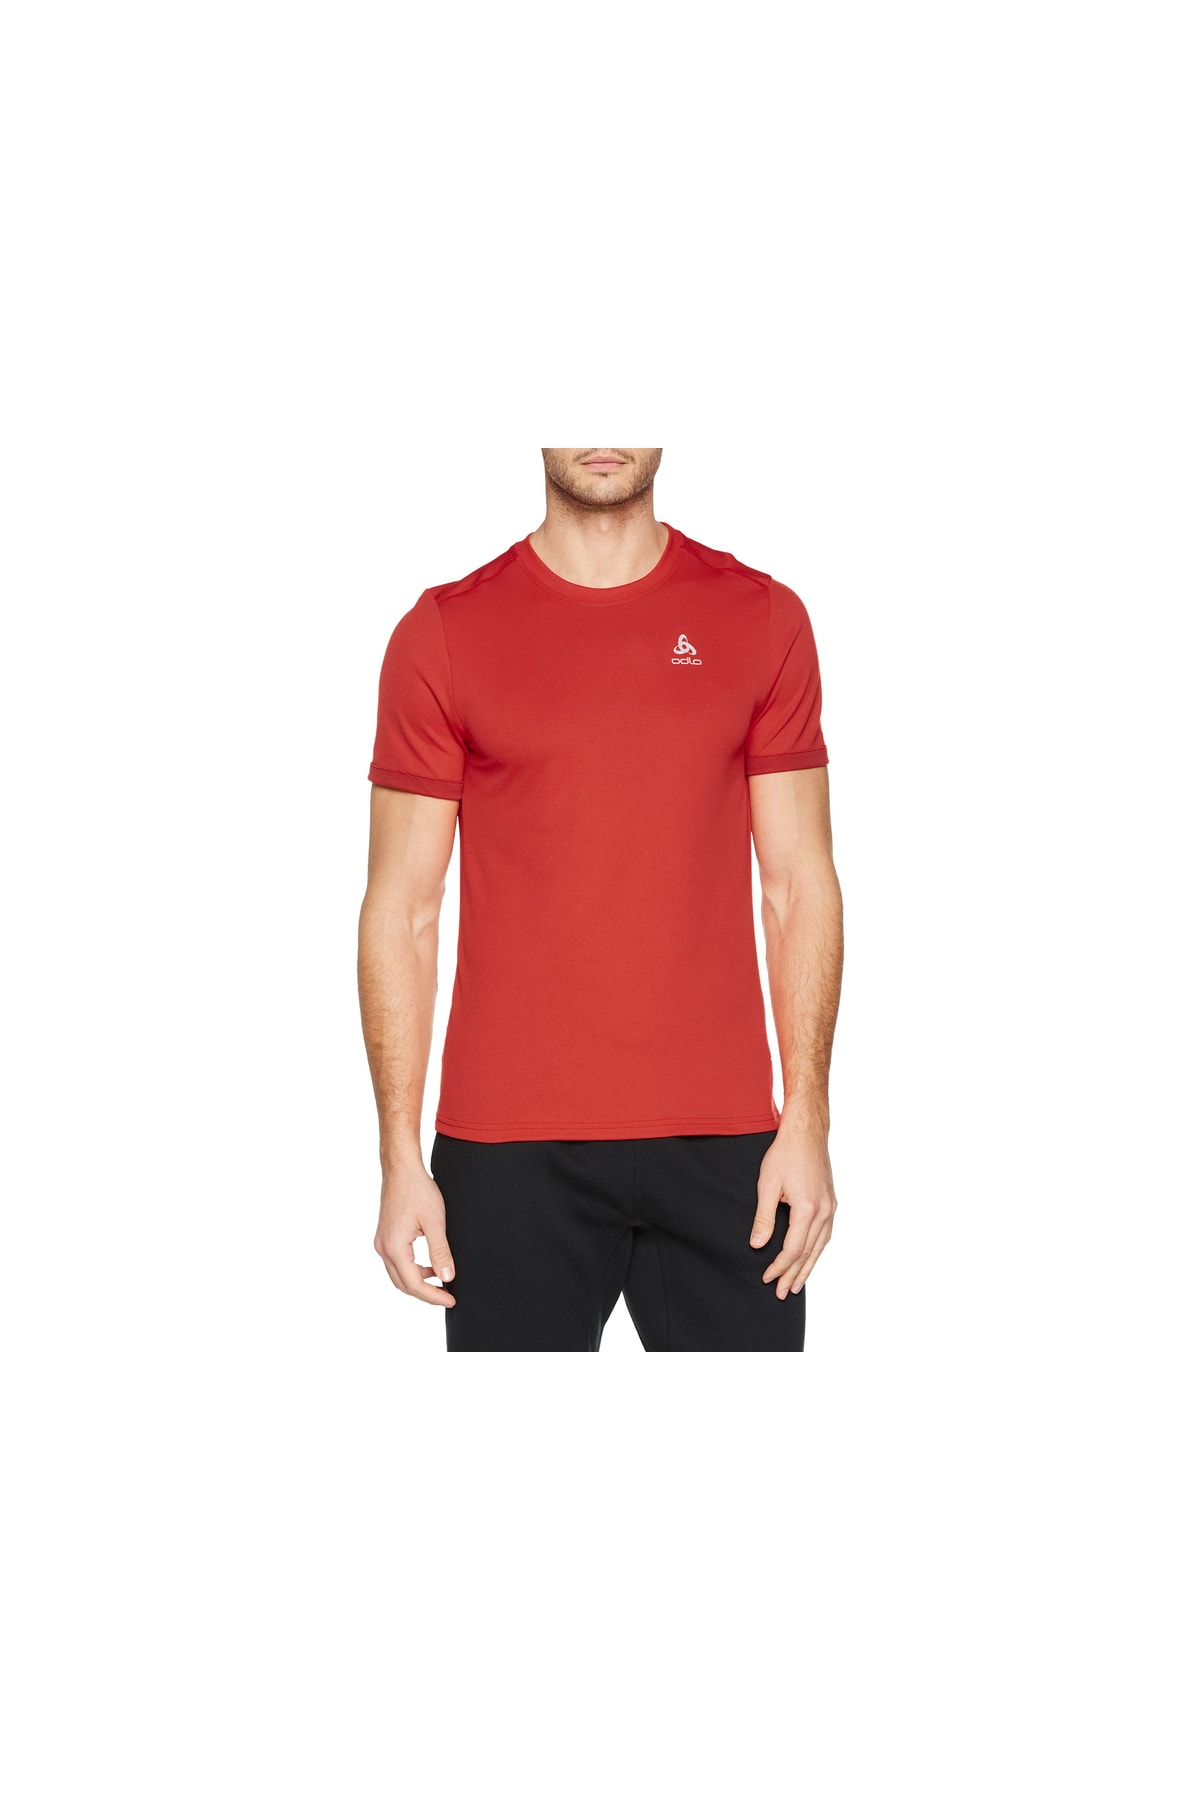 Odlo Hemd Rot Regular Fit Fast ausverkauft